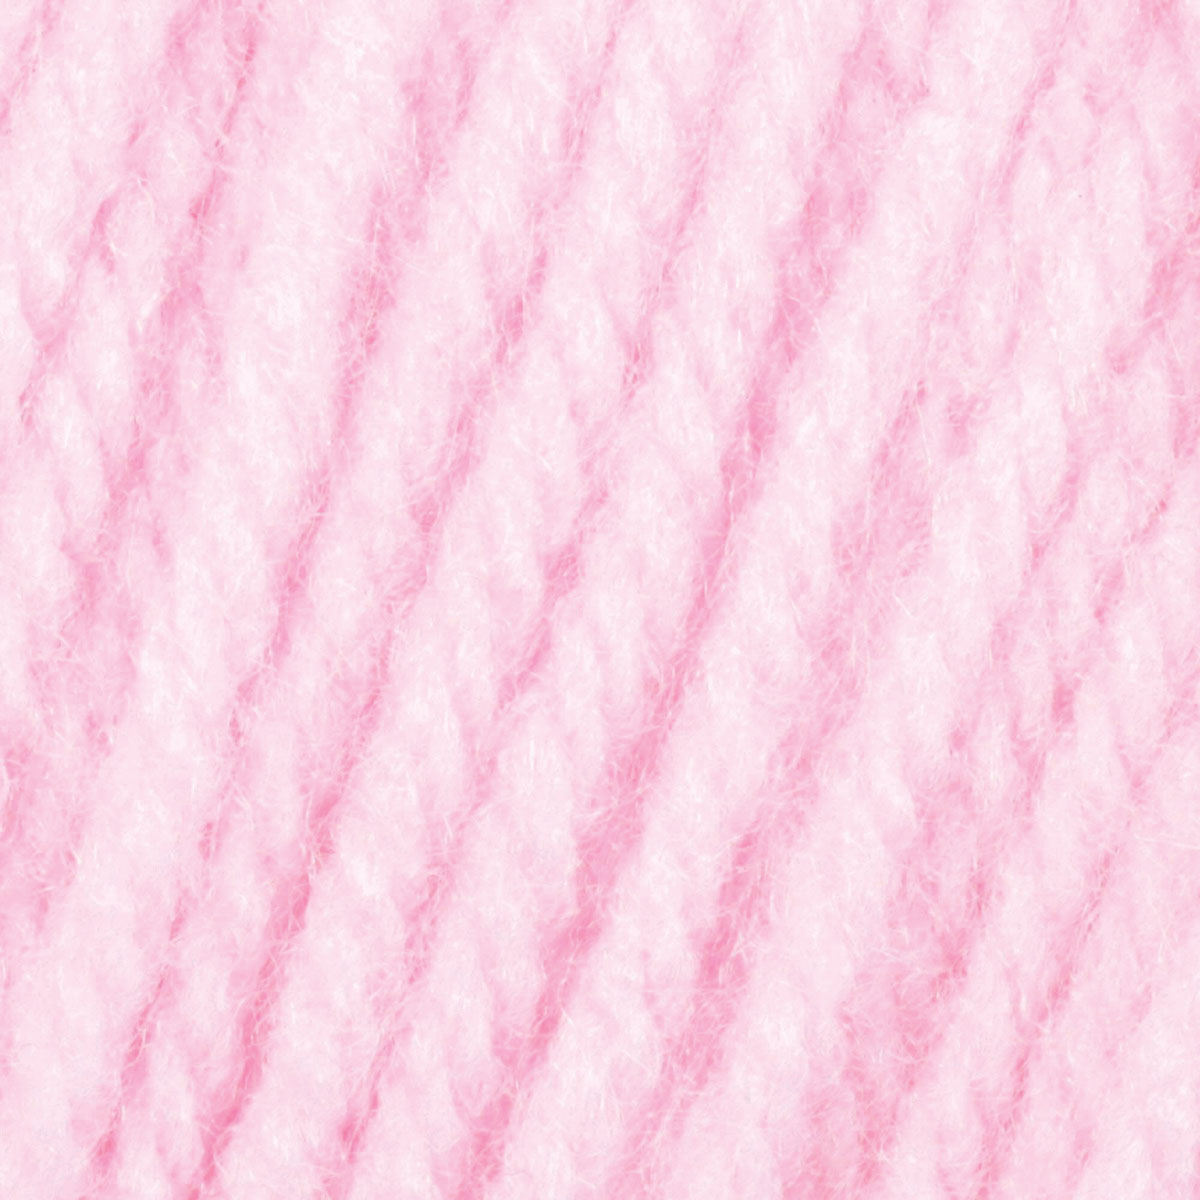 Caron One Pound Yarn - Soft Pink 10513 - 812 yards, 16 oz - Tony's  Restaurant in Alton, IL